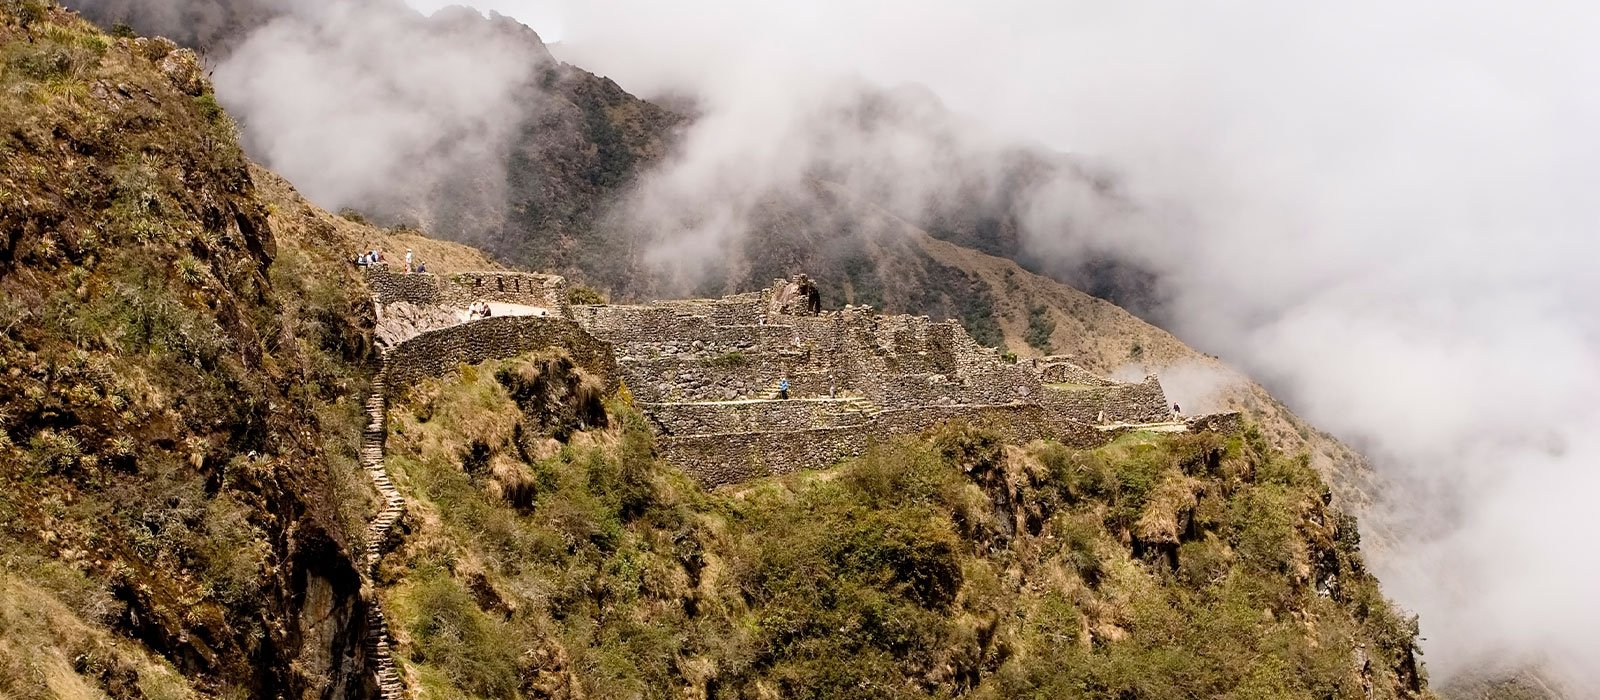 Classic Inca Trail Trek to Machu Picchu